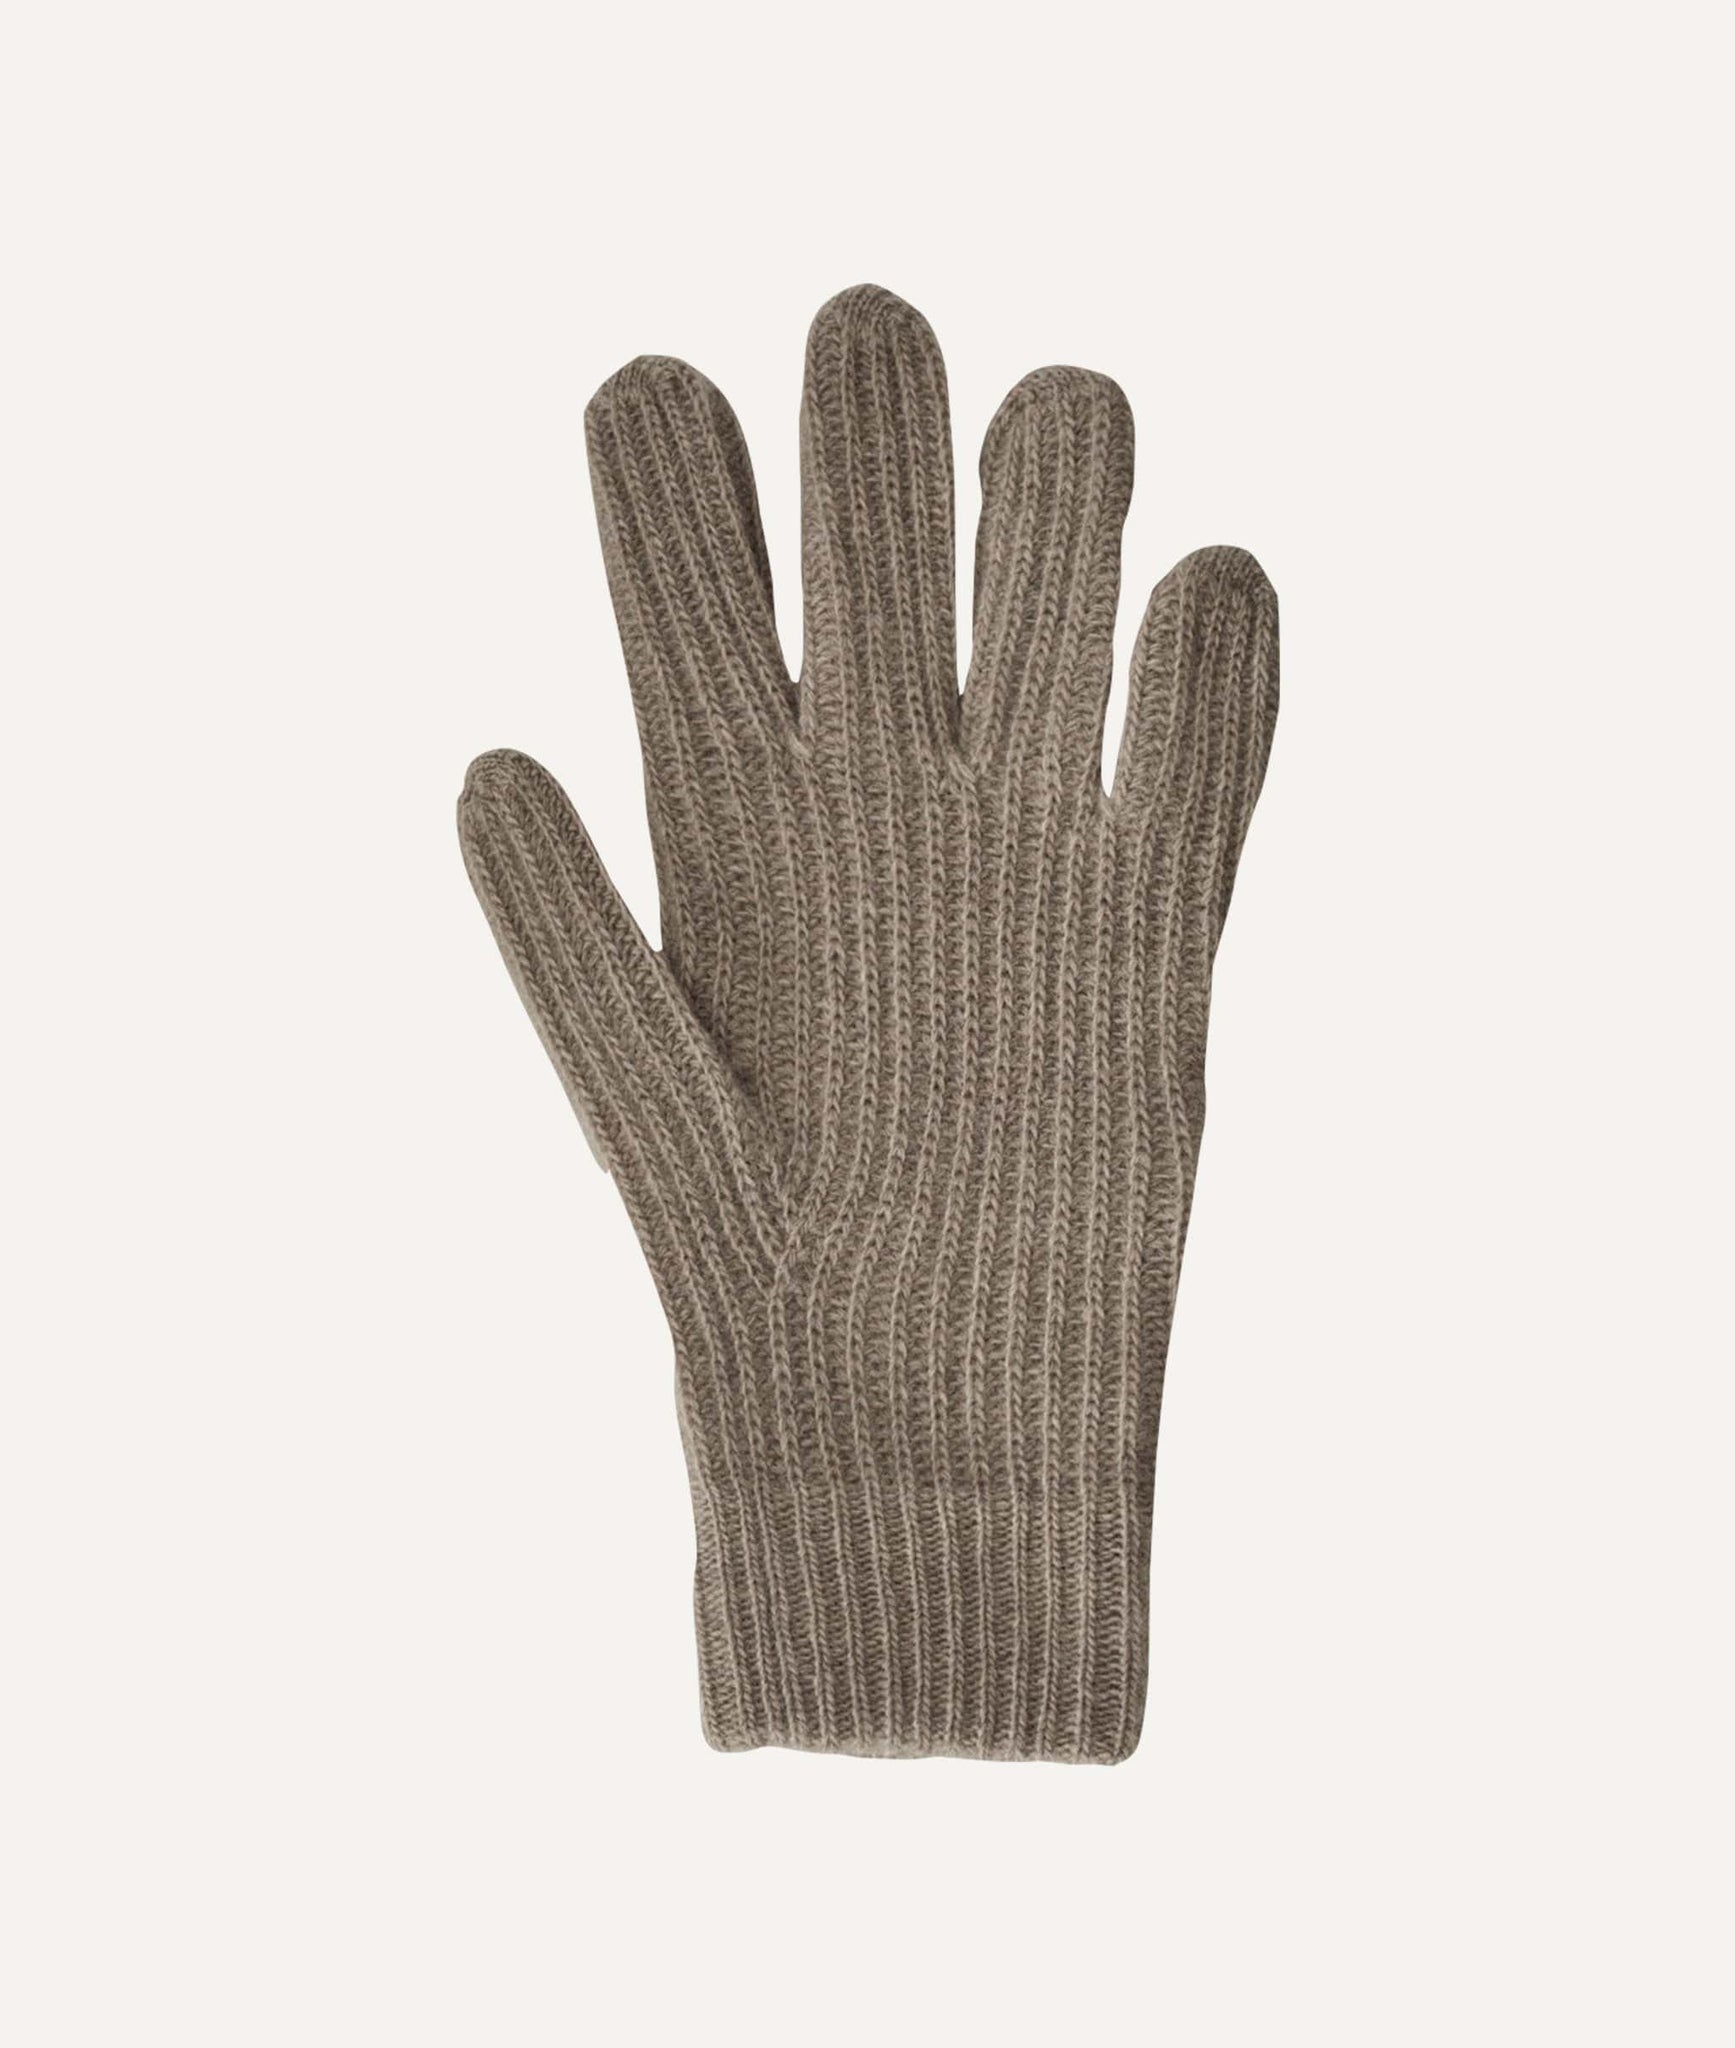 Die gerippten Handschuhe aus Wolle für Frauen